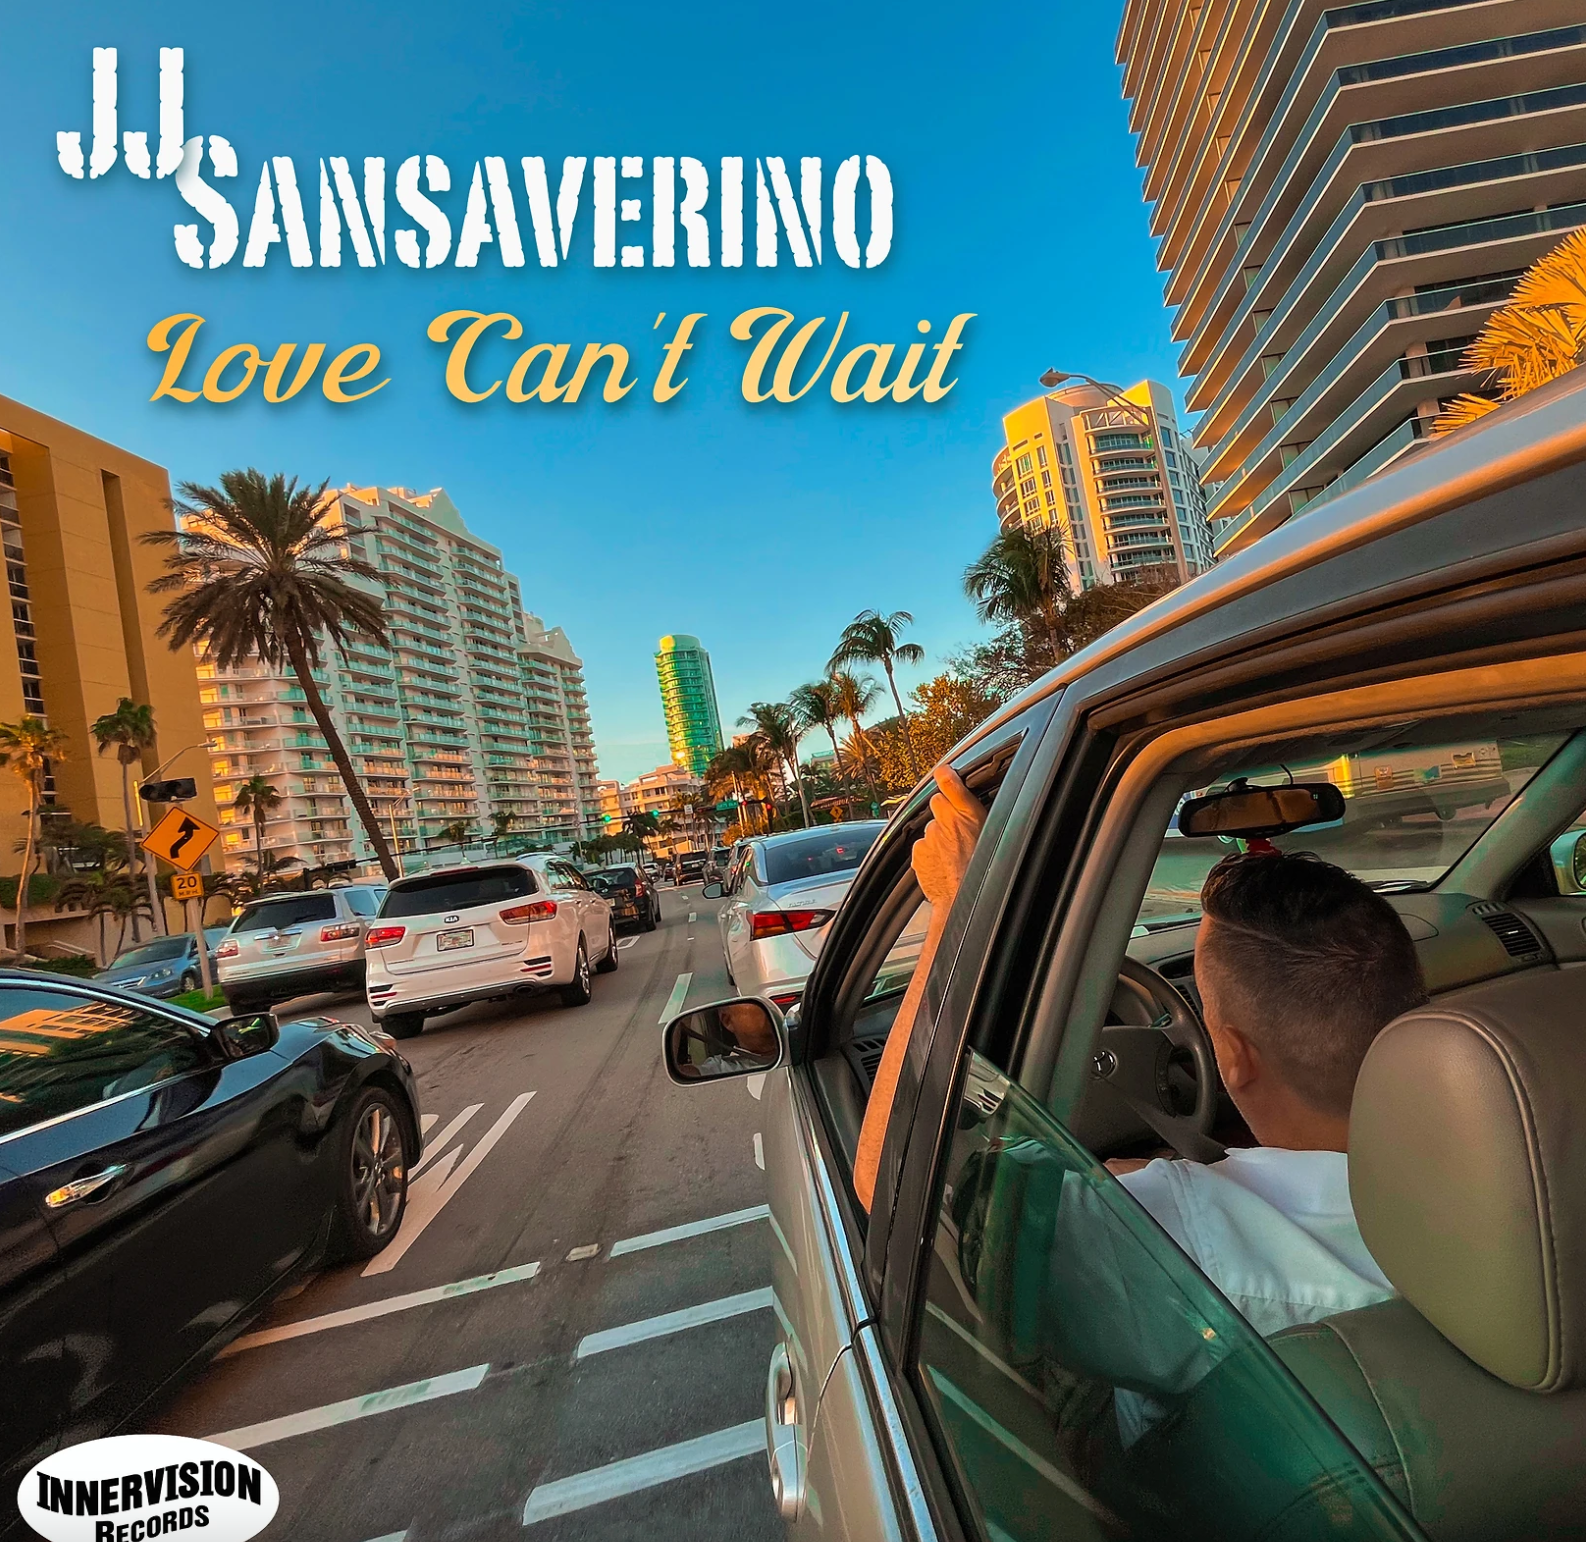 Art for Love Can't Wait by JJ Sansaverino